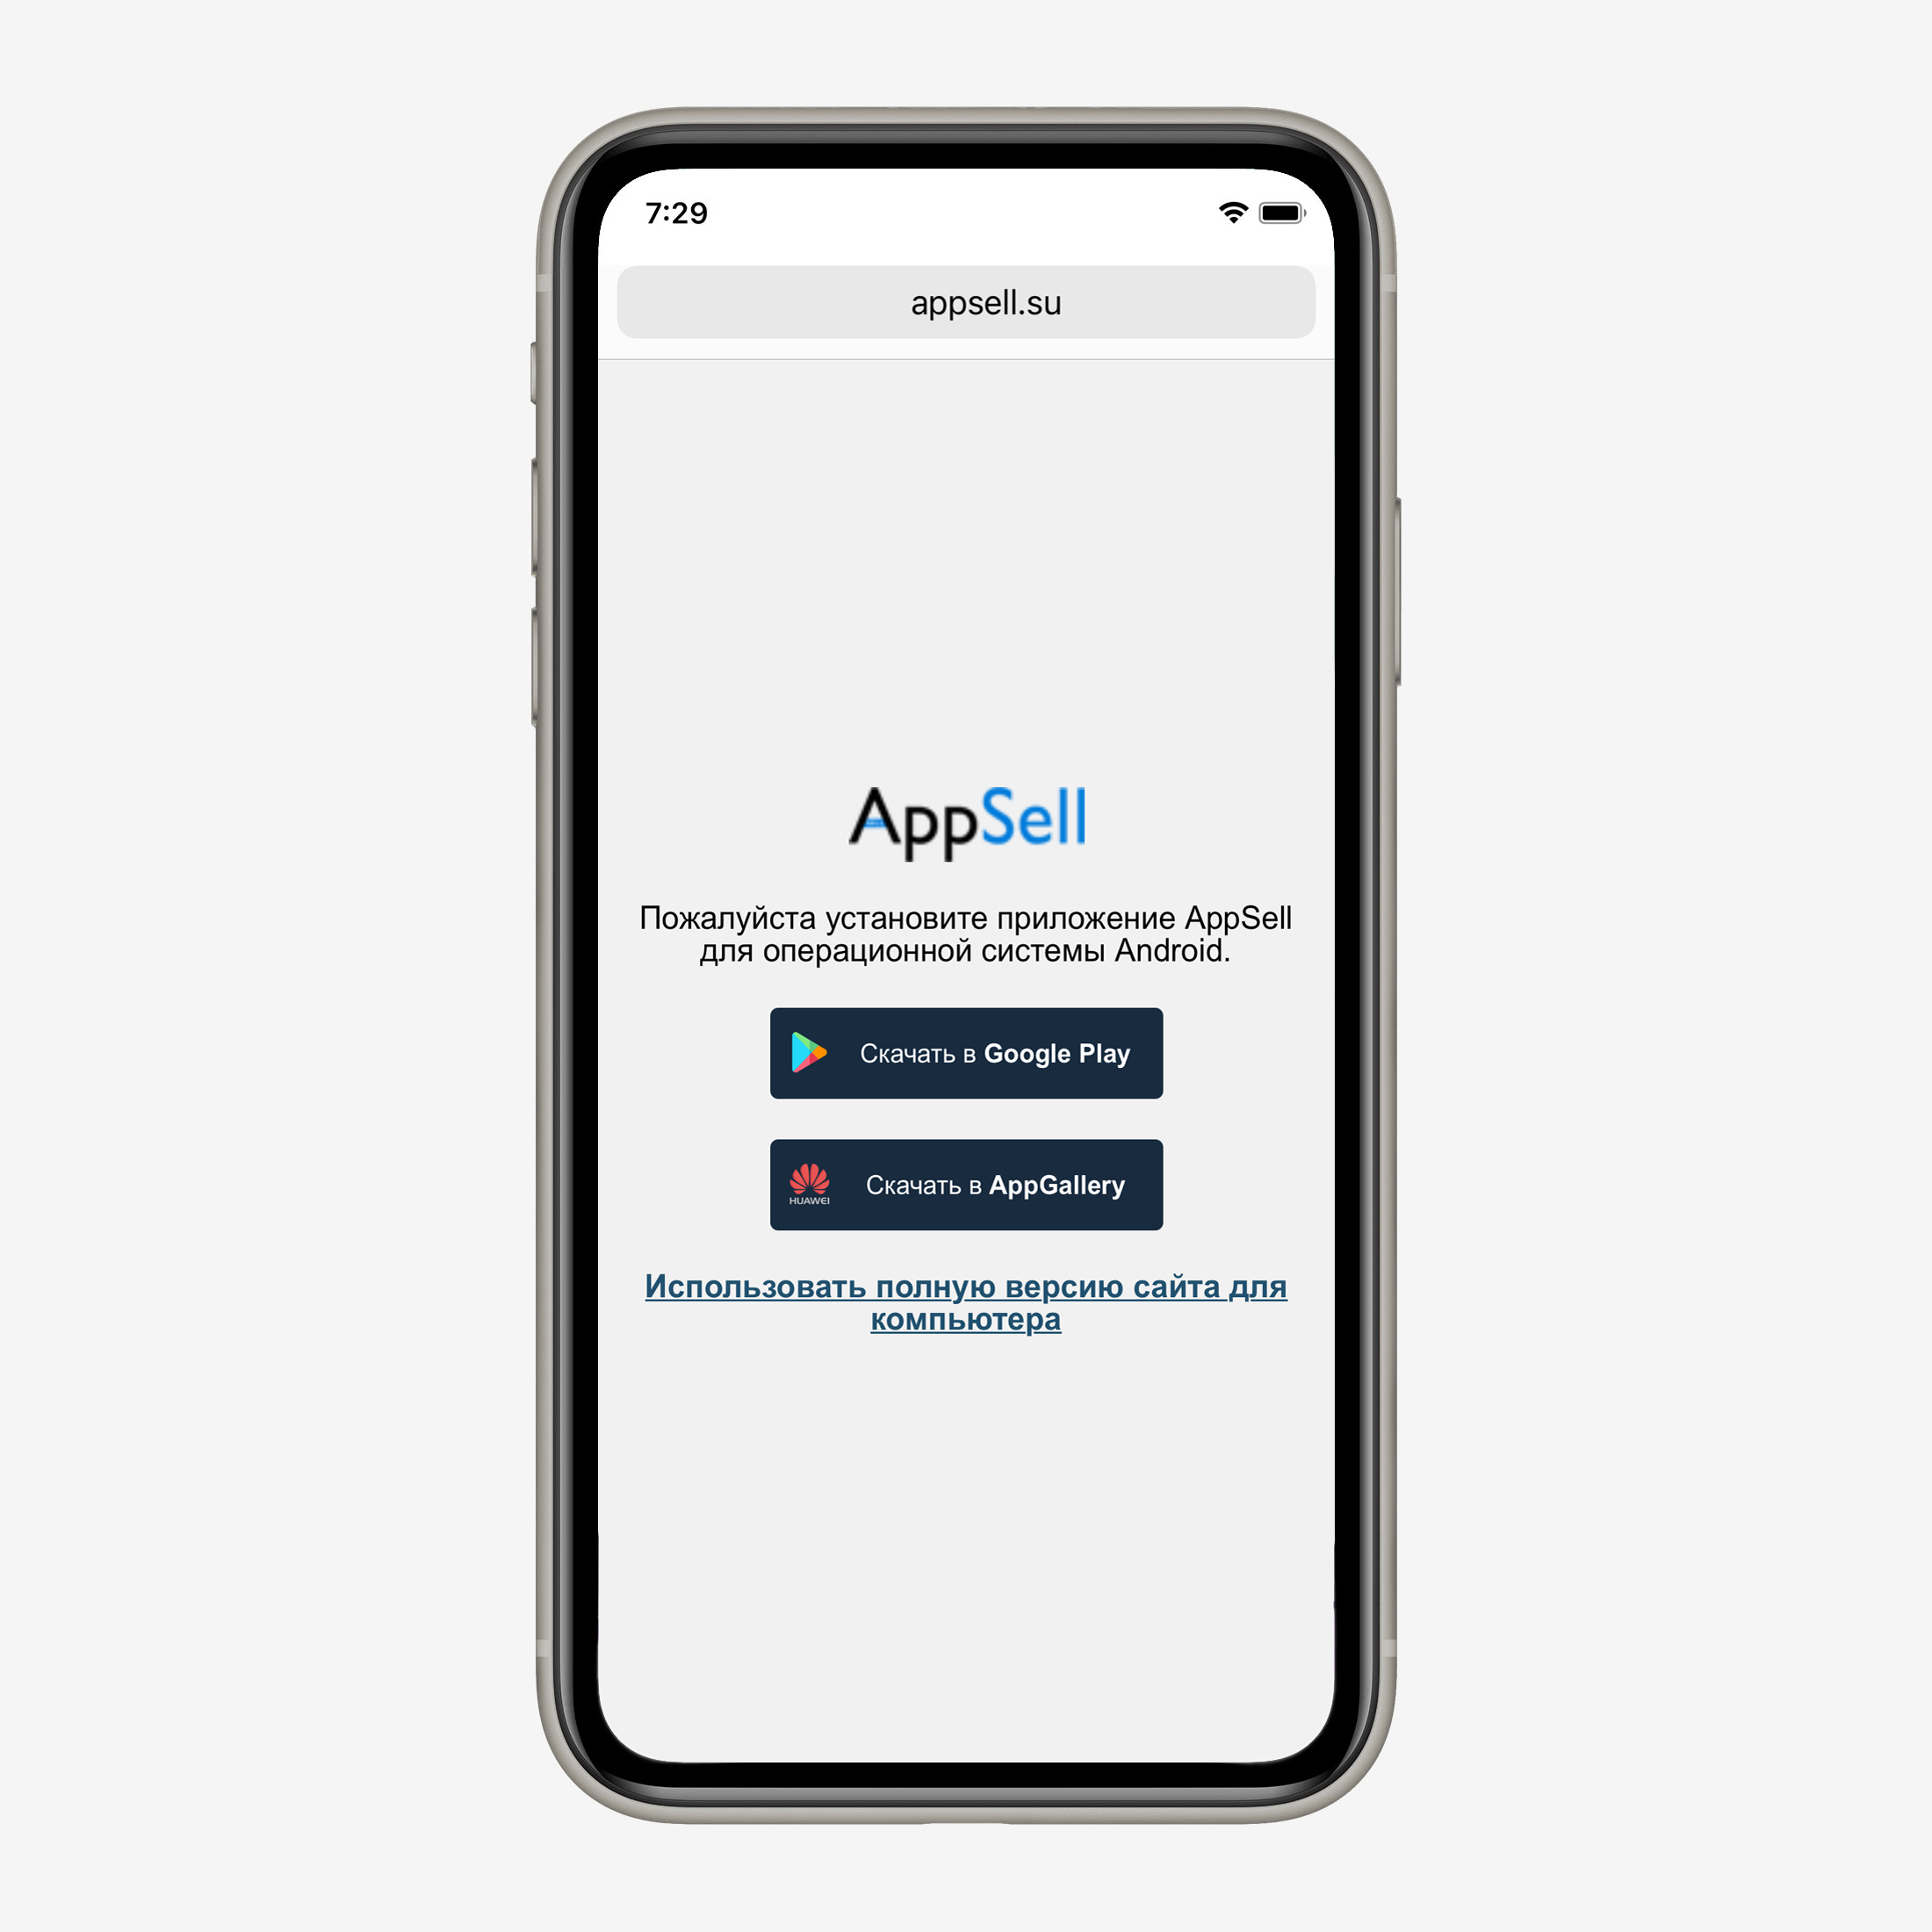 Дизайн сообщения с просьбой скачать приложение AppSell